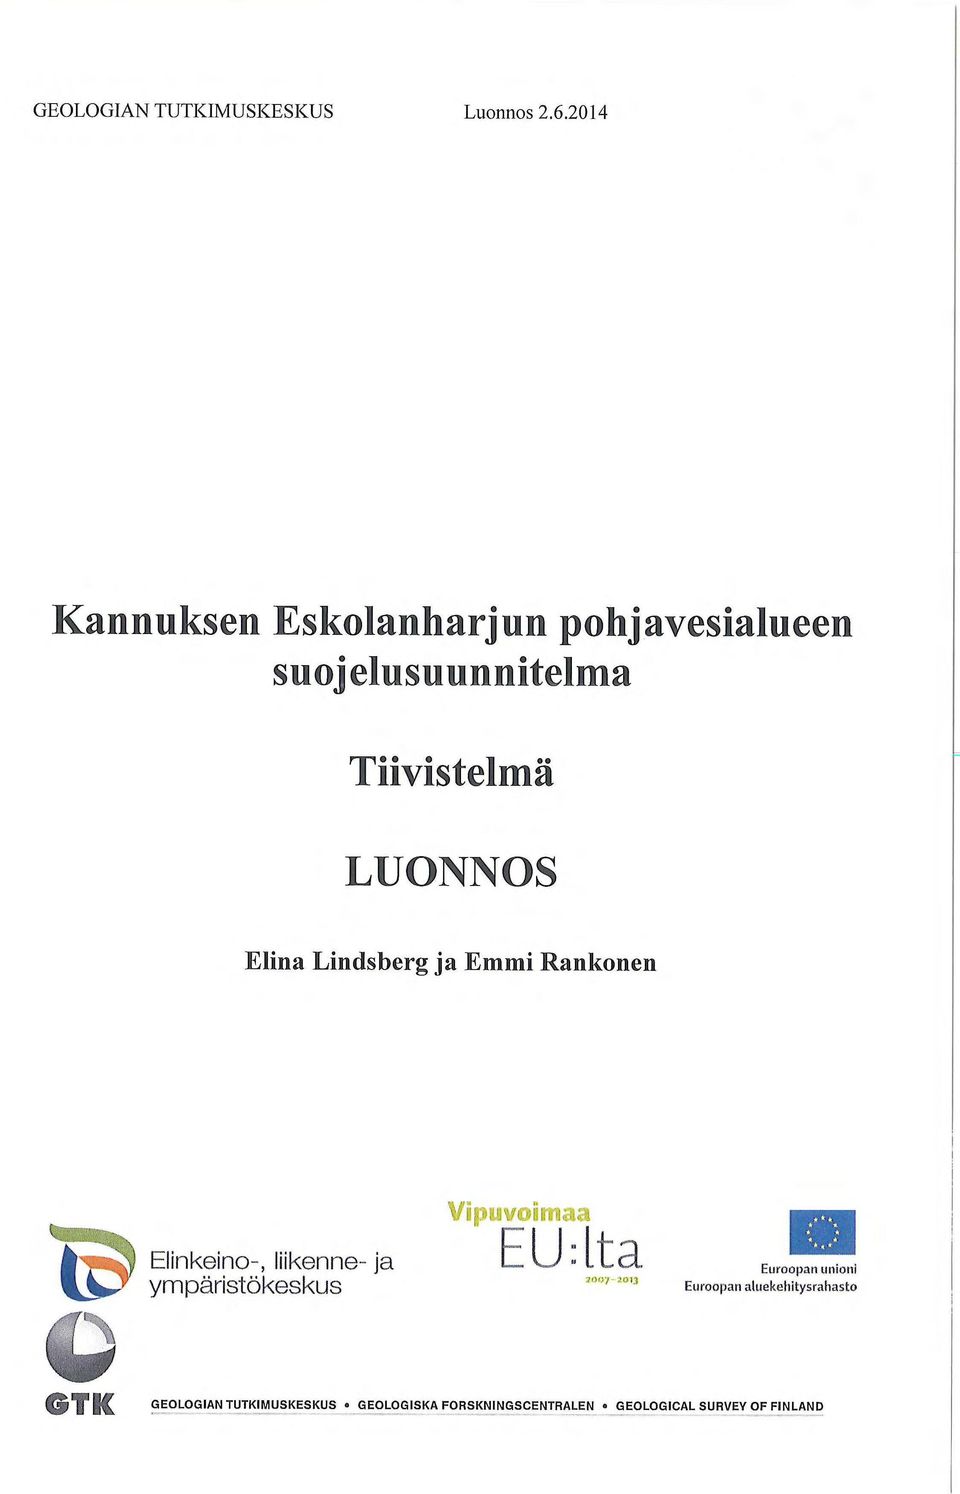 LUONNOS Elina Lindsberg ja Emmi Rankonen, ty9 Elinkeino-, liikenne- ja ympäristökeskus